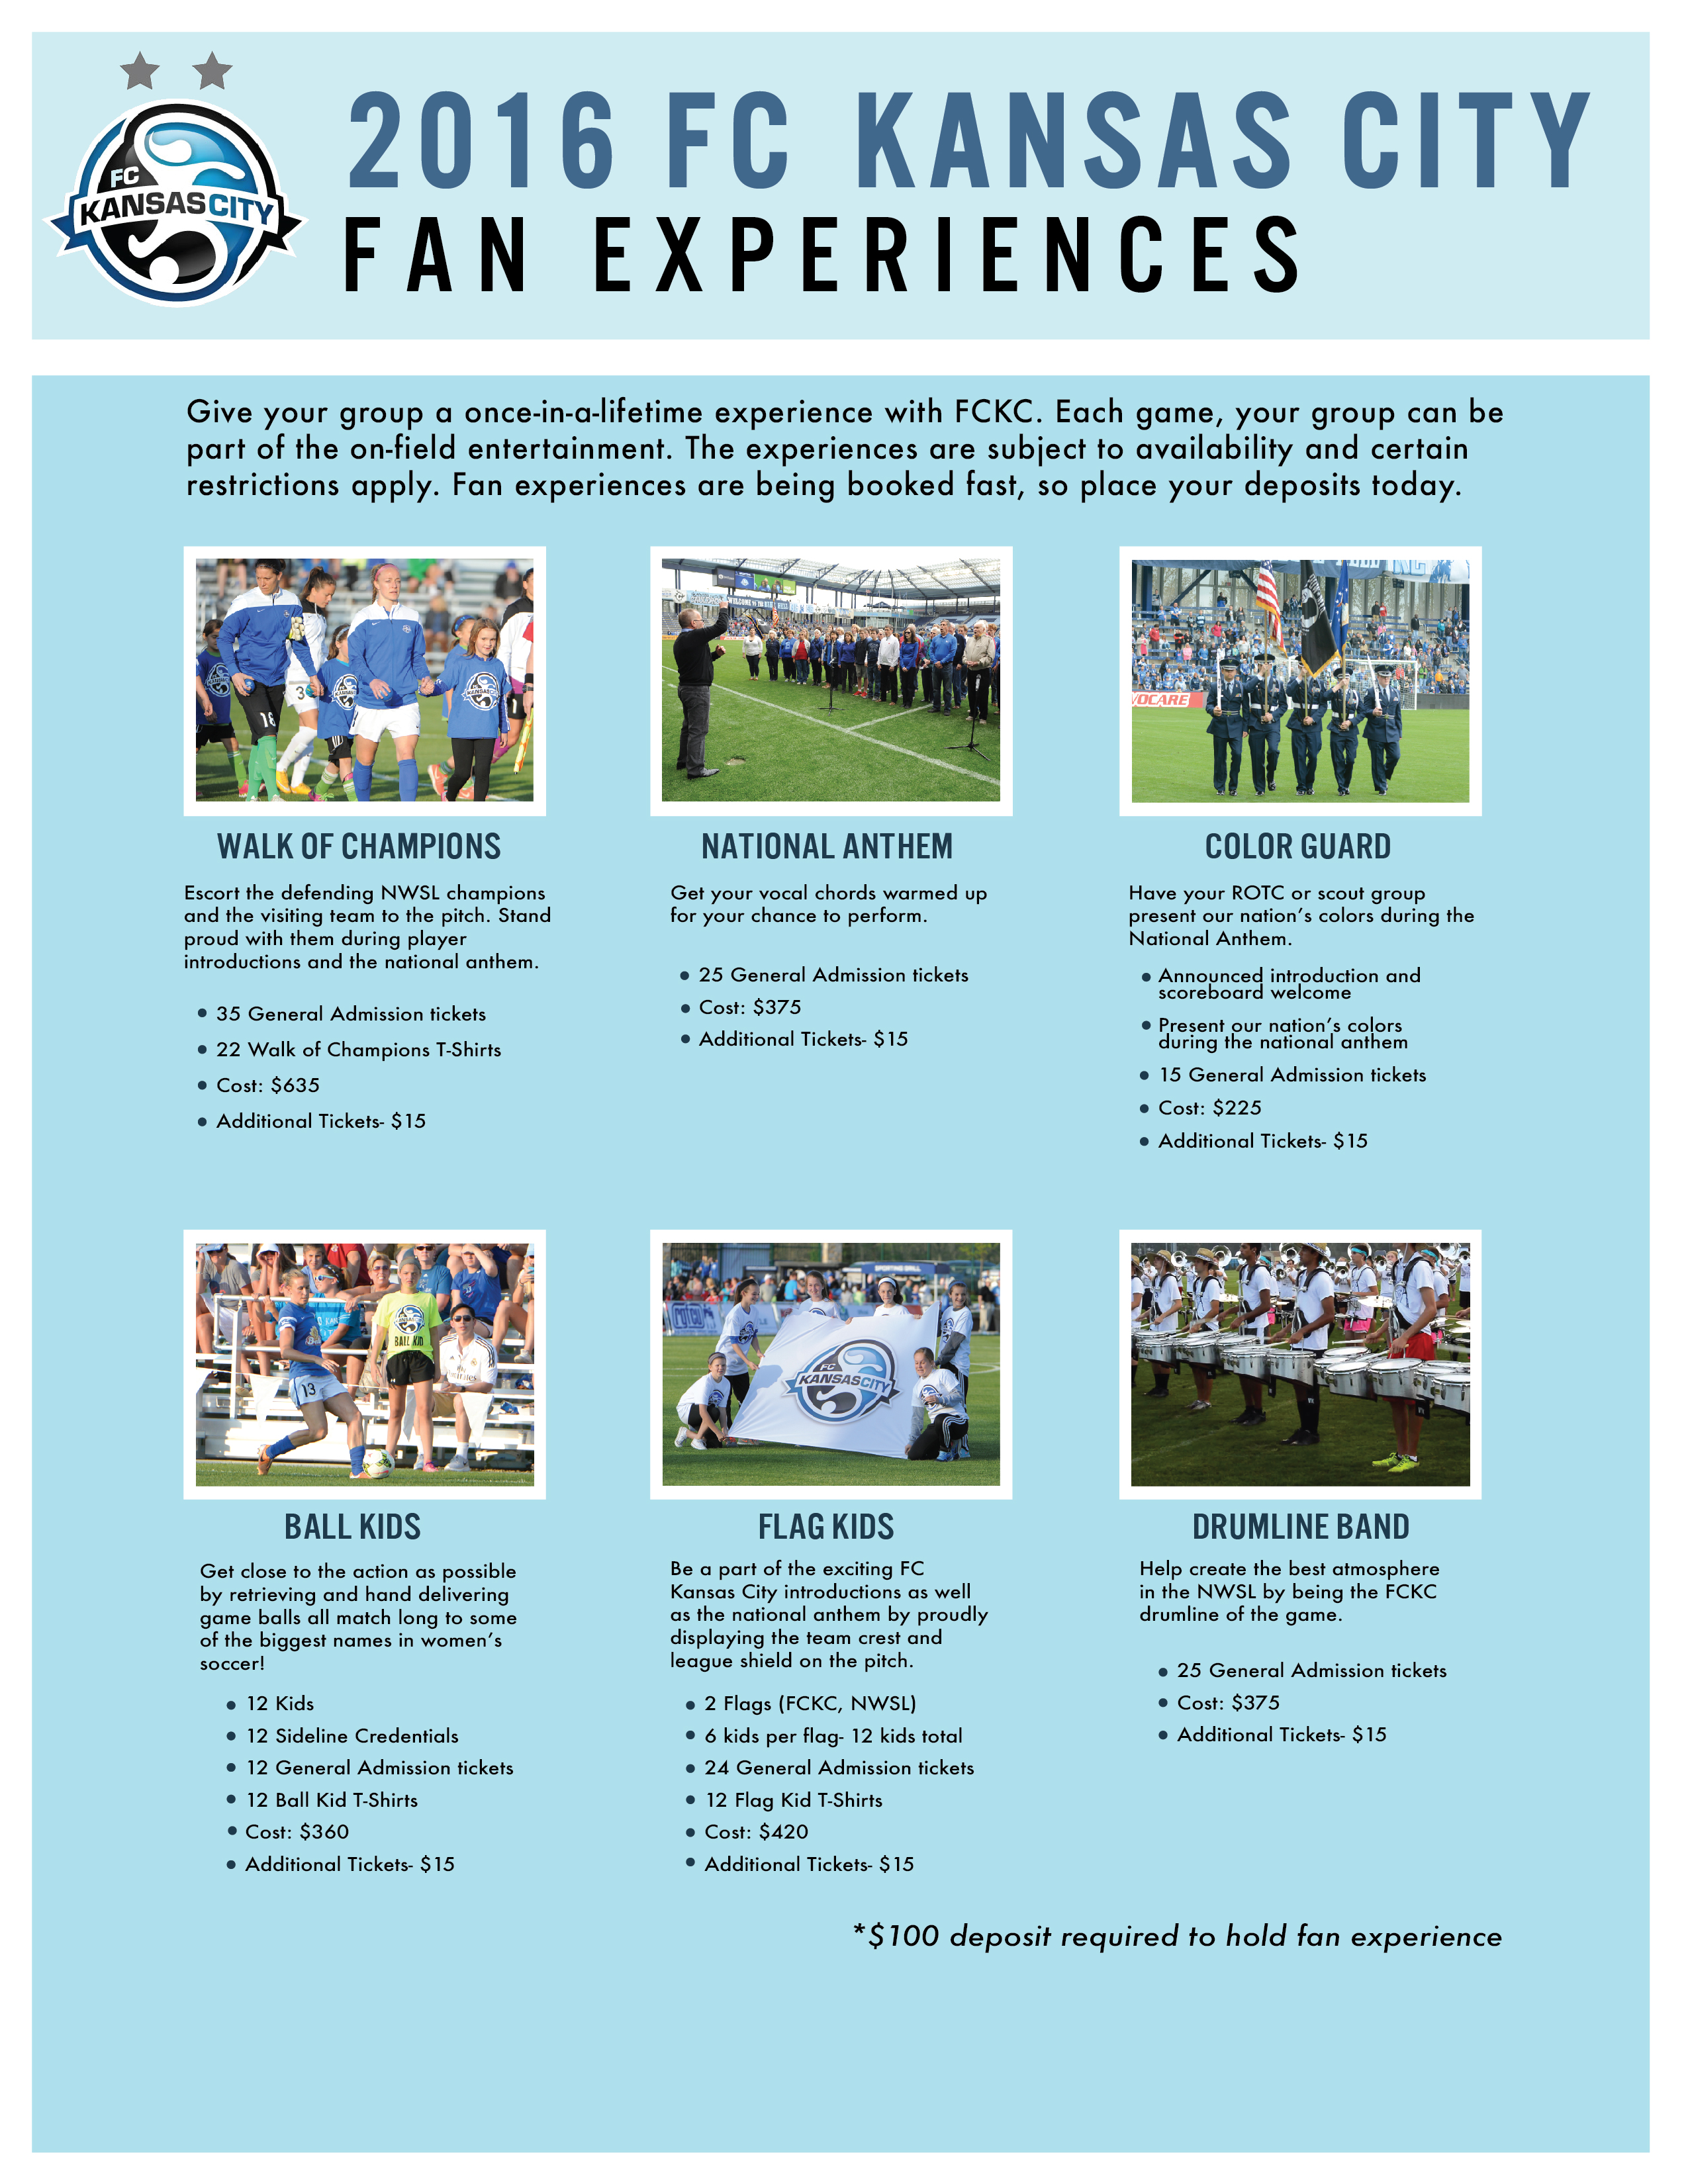 FCKC Fan Experience - Website